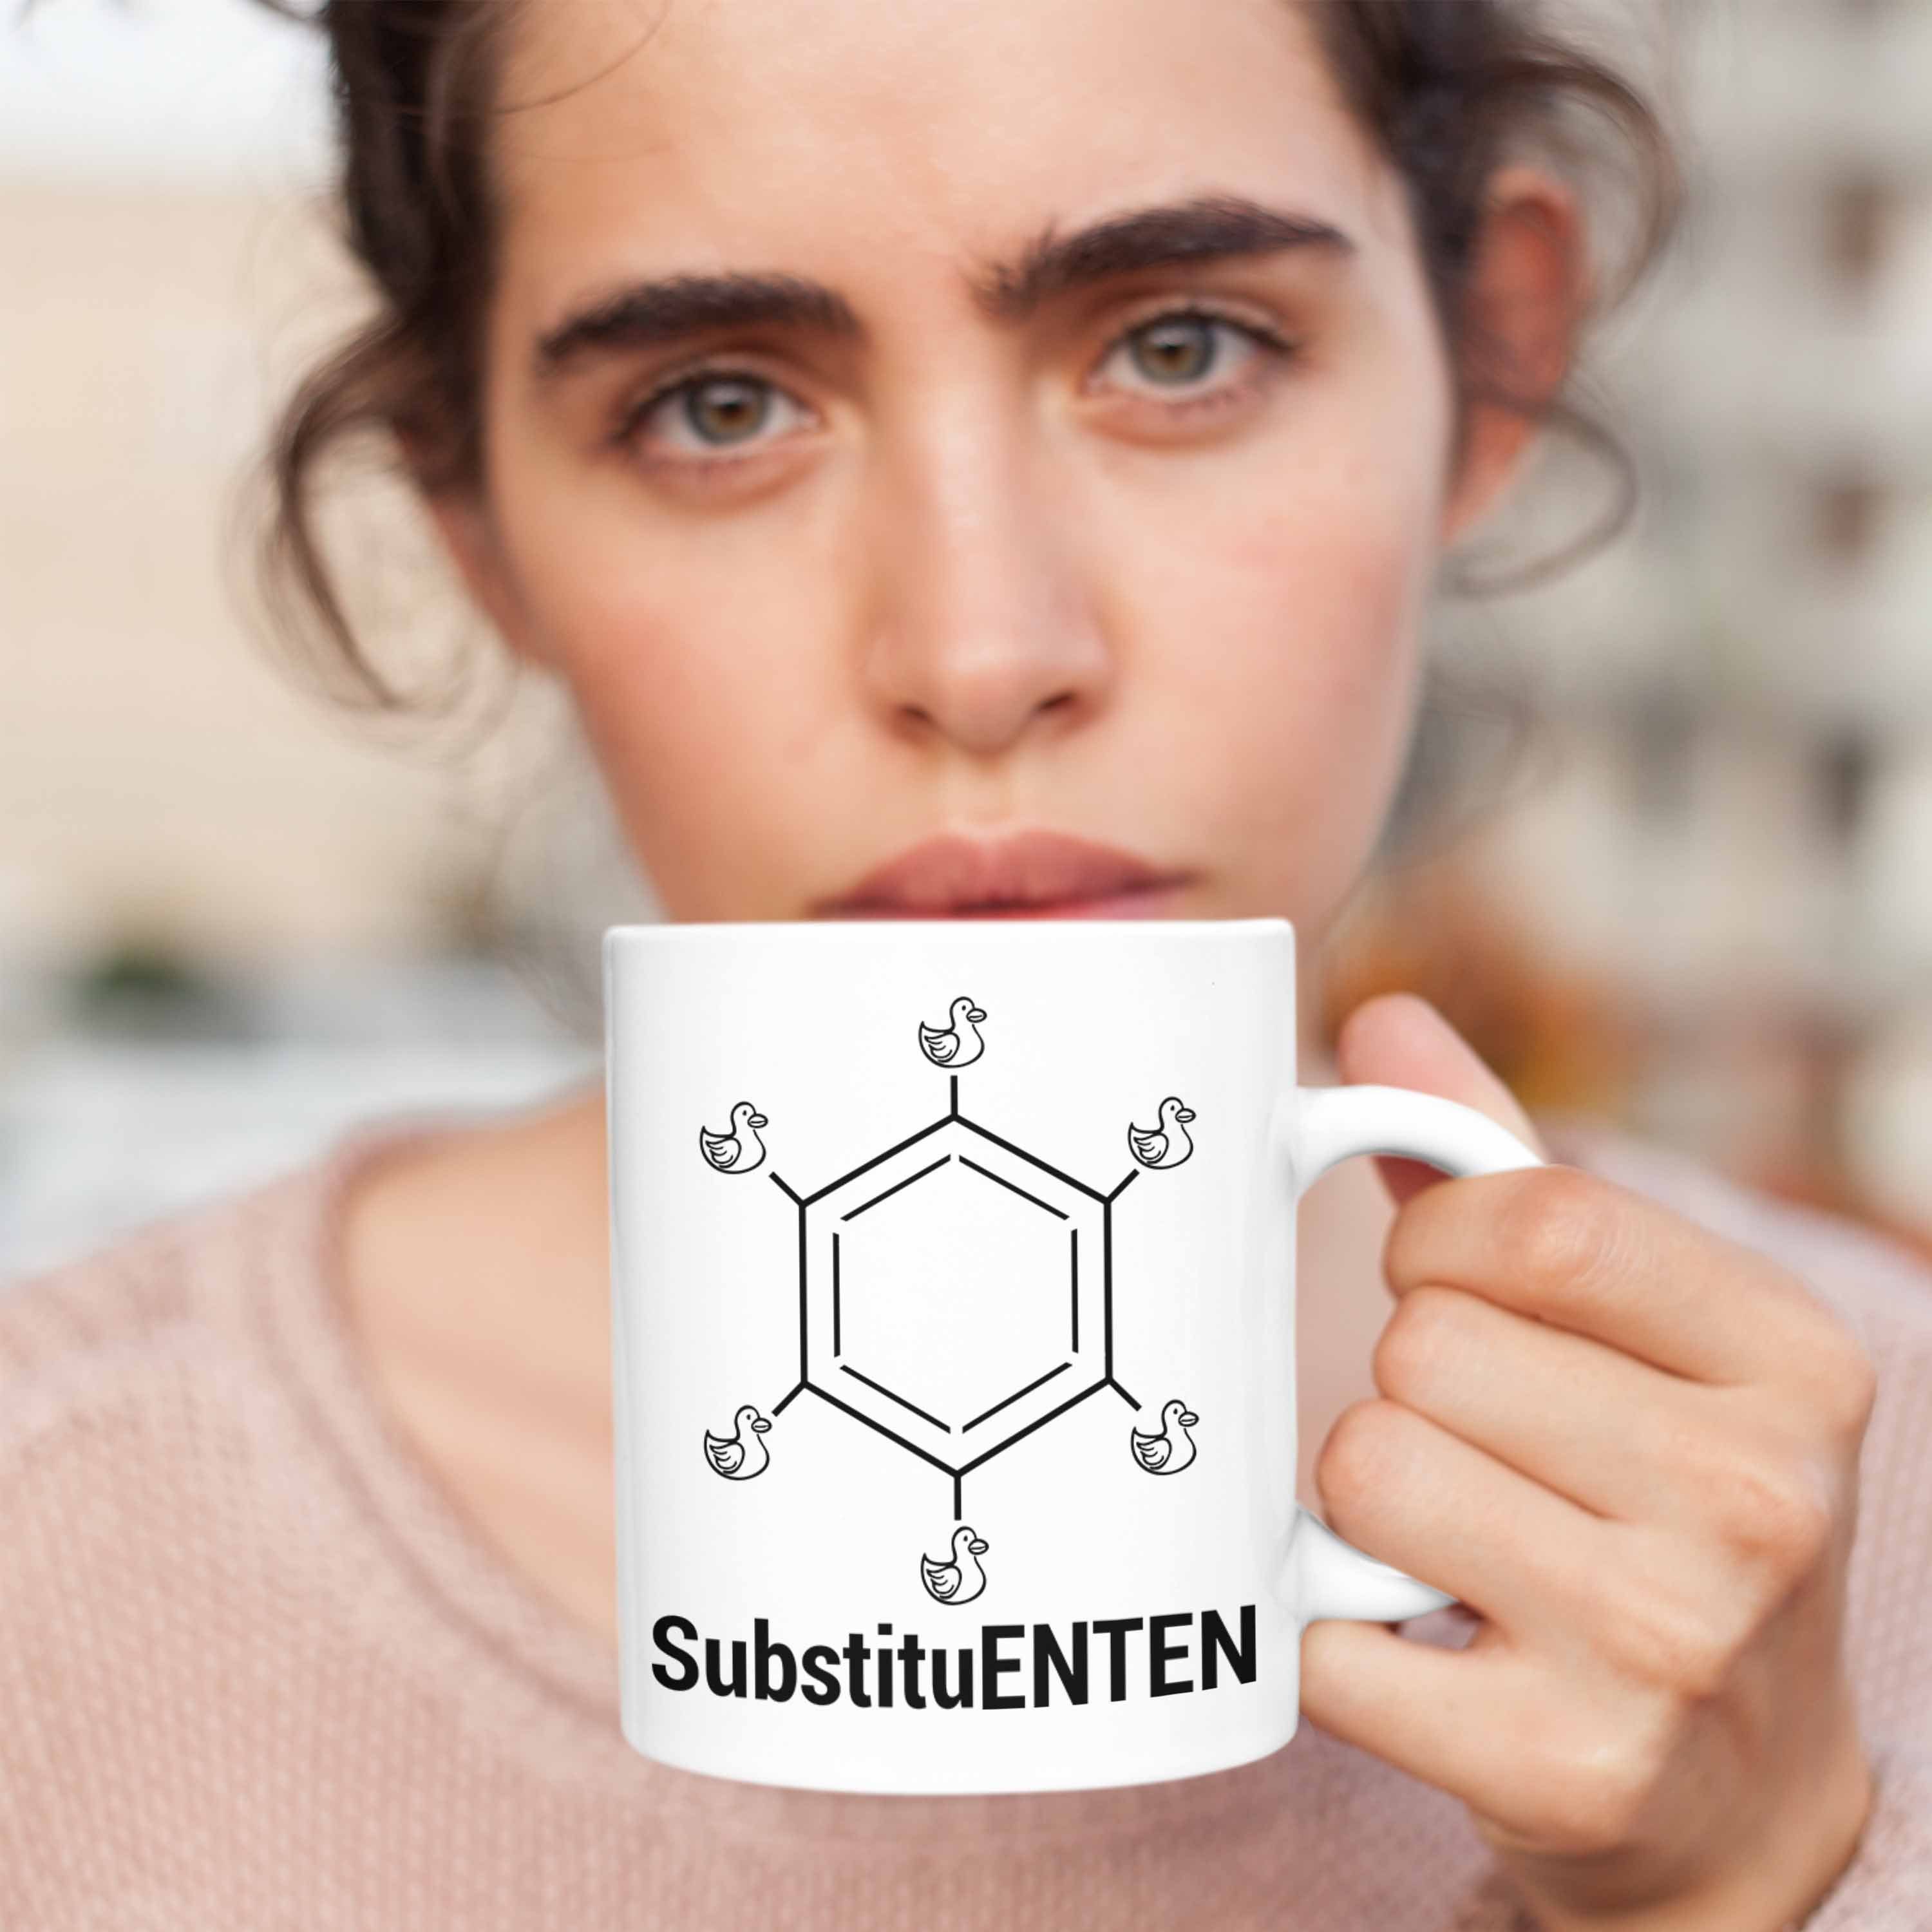 Chemiker Organische Weiss Chemie SubstituENTEN Witz Kaffee Tasse Trendation Ente Tasse Chemie